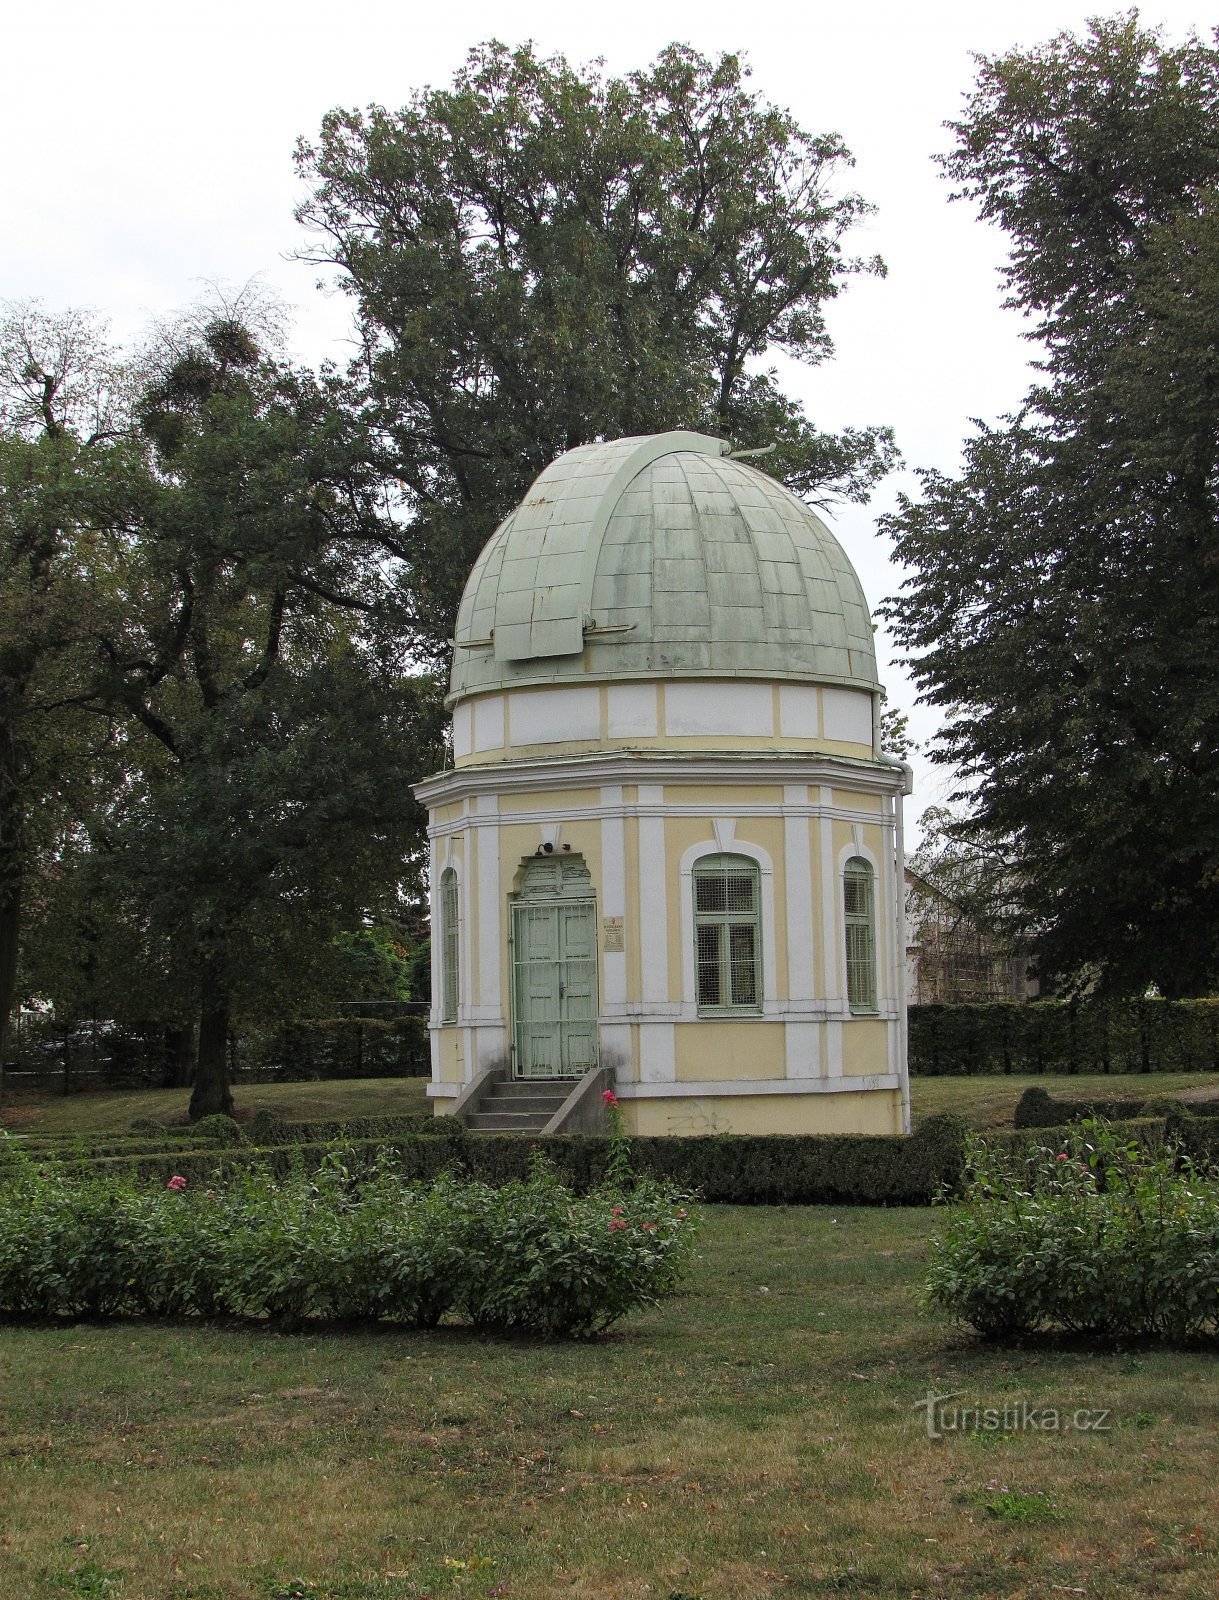 Holešov - đài tưởng niệm nhà soạn nhạc và đài quan sát